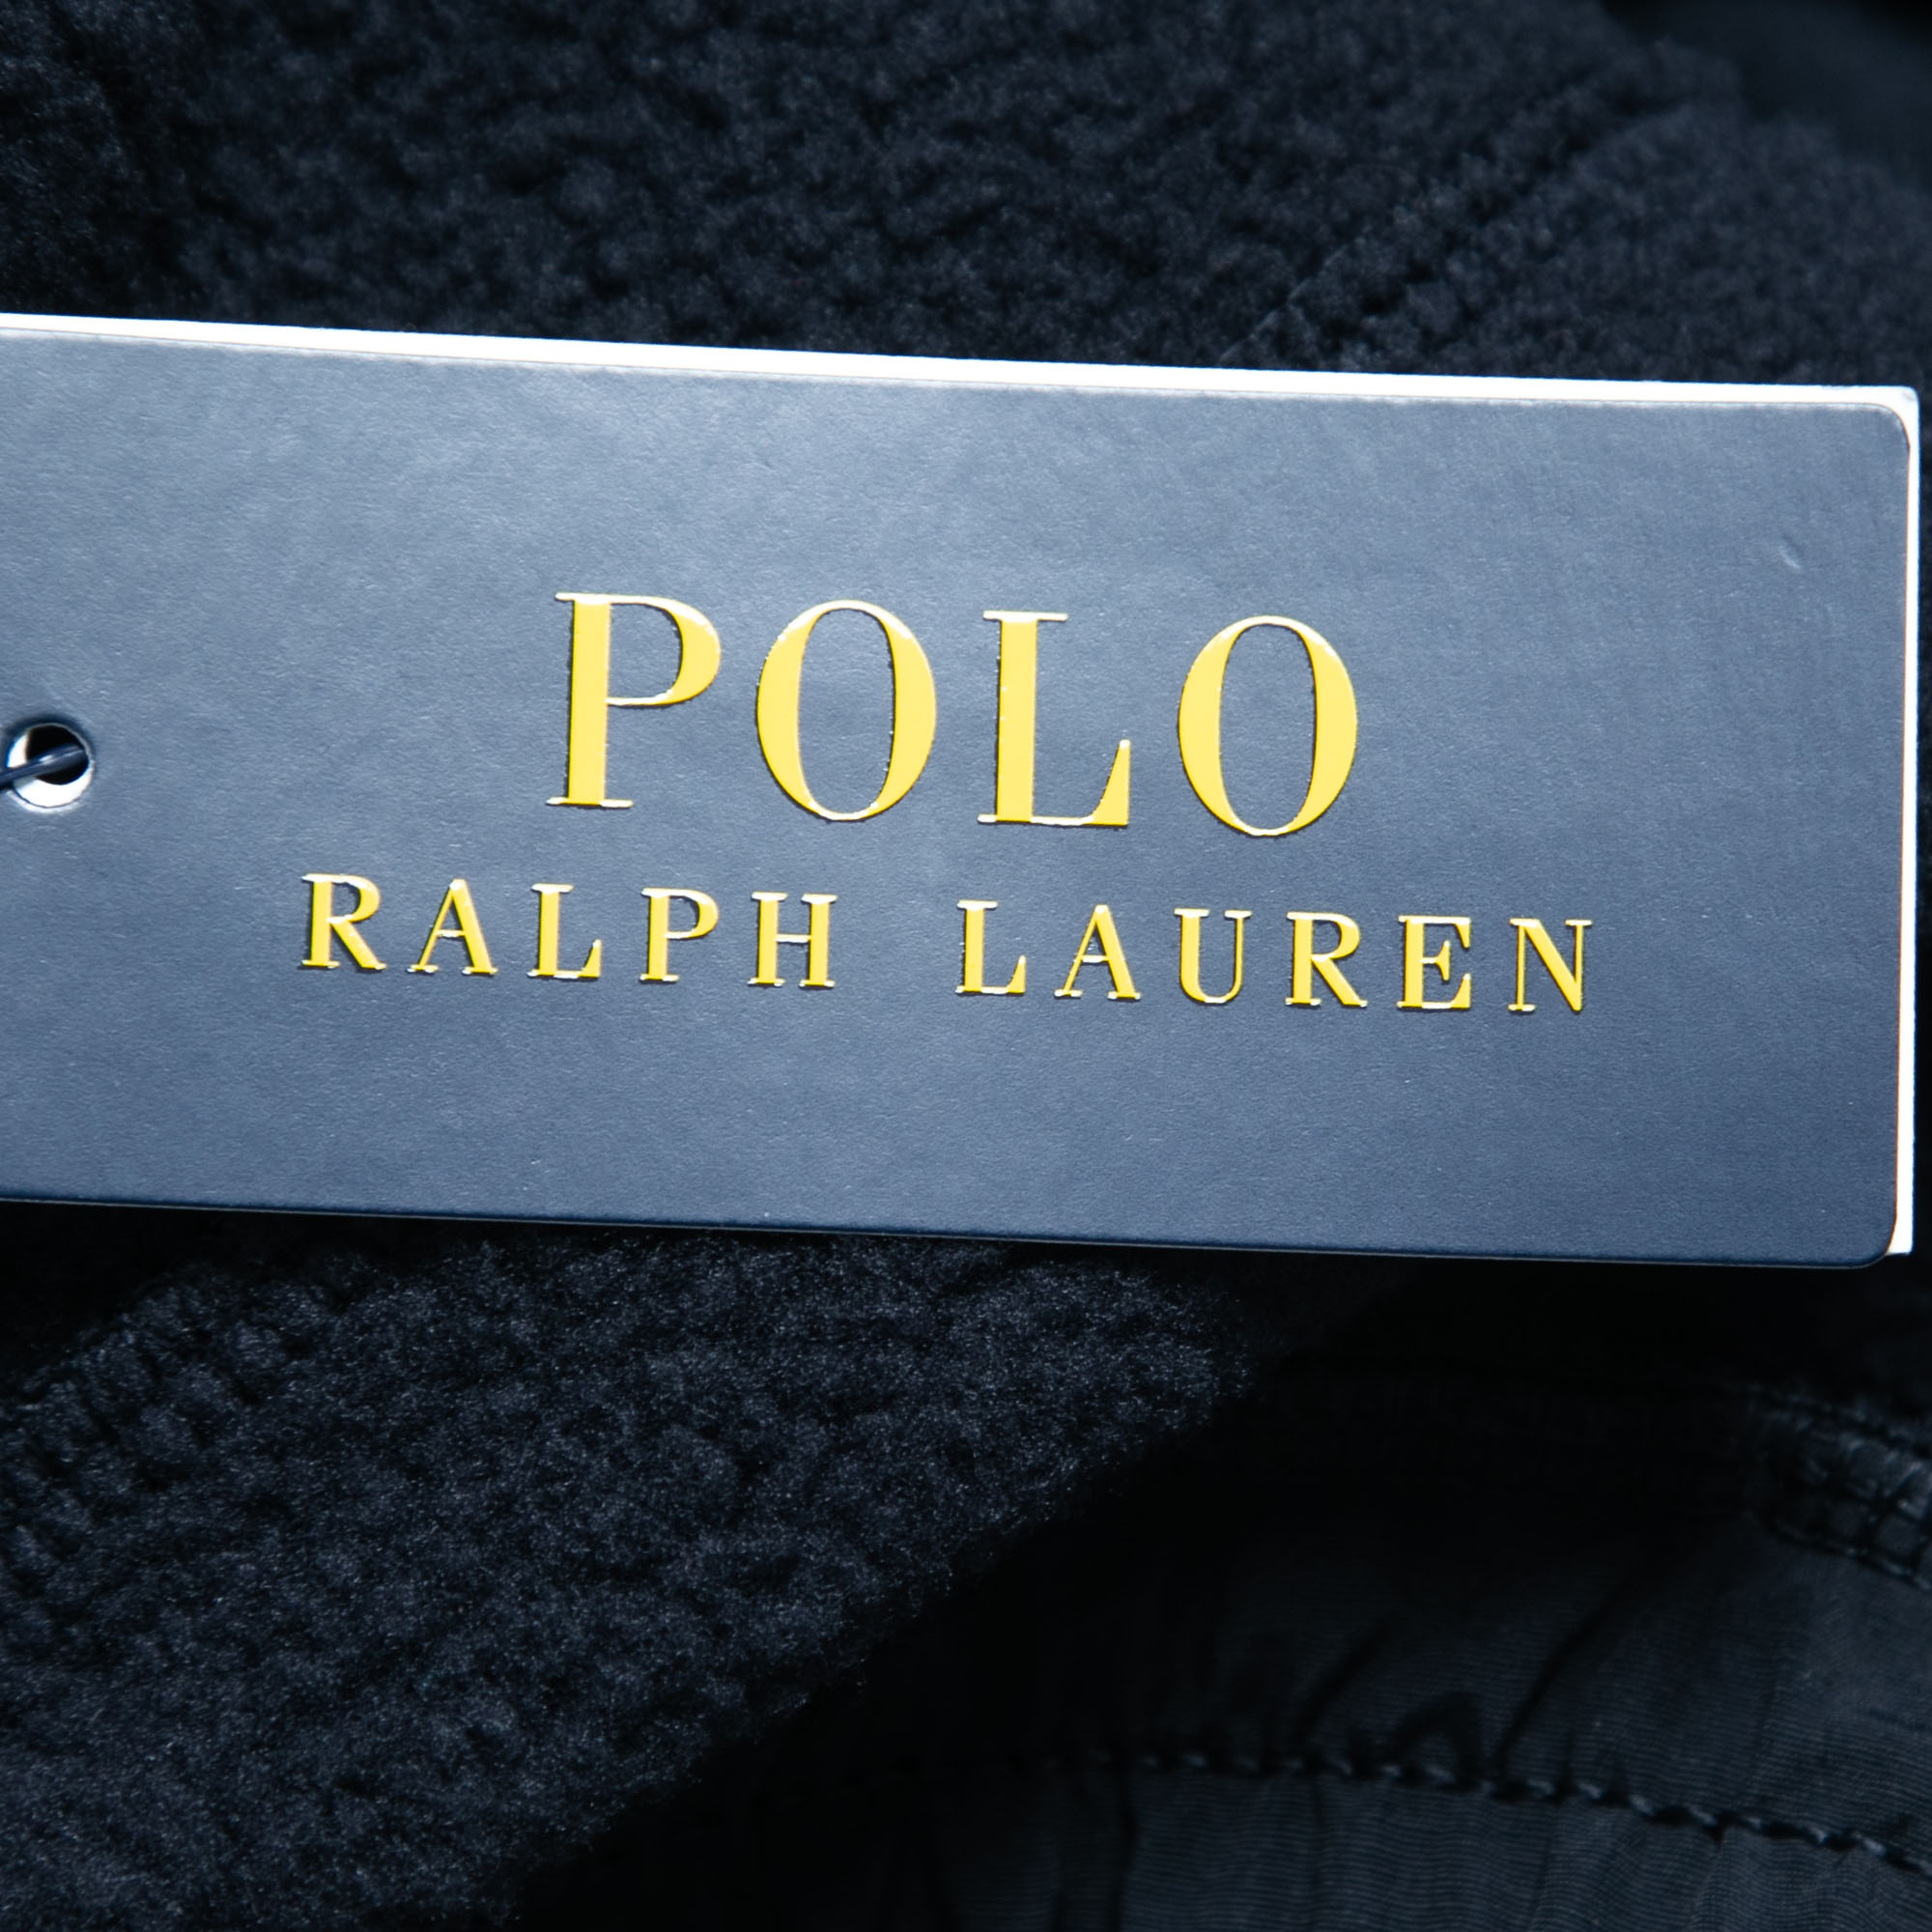 Polo Ralph Lauren Navy Blue Cotton Blend Aviatr Joggers XL